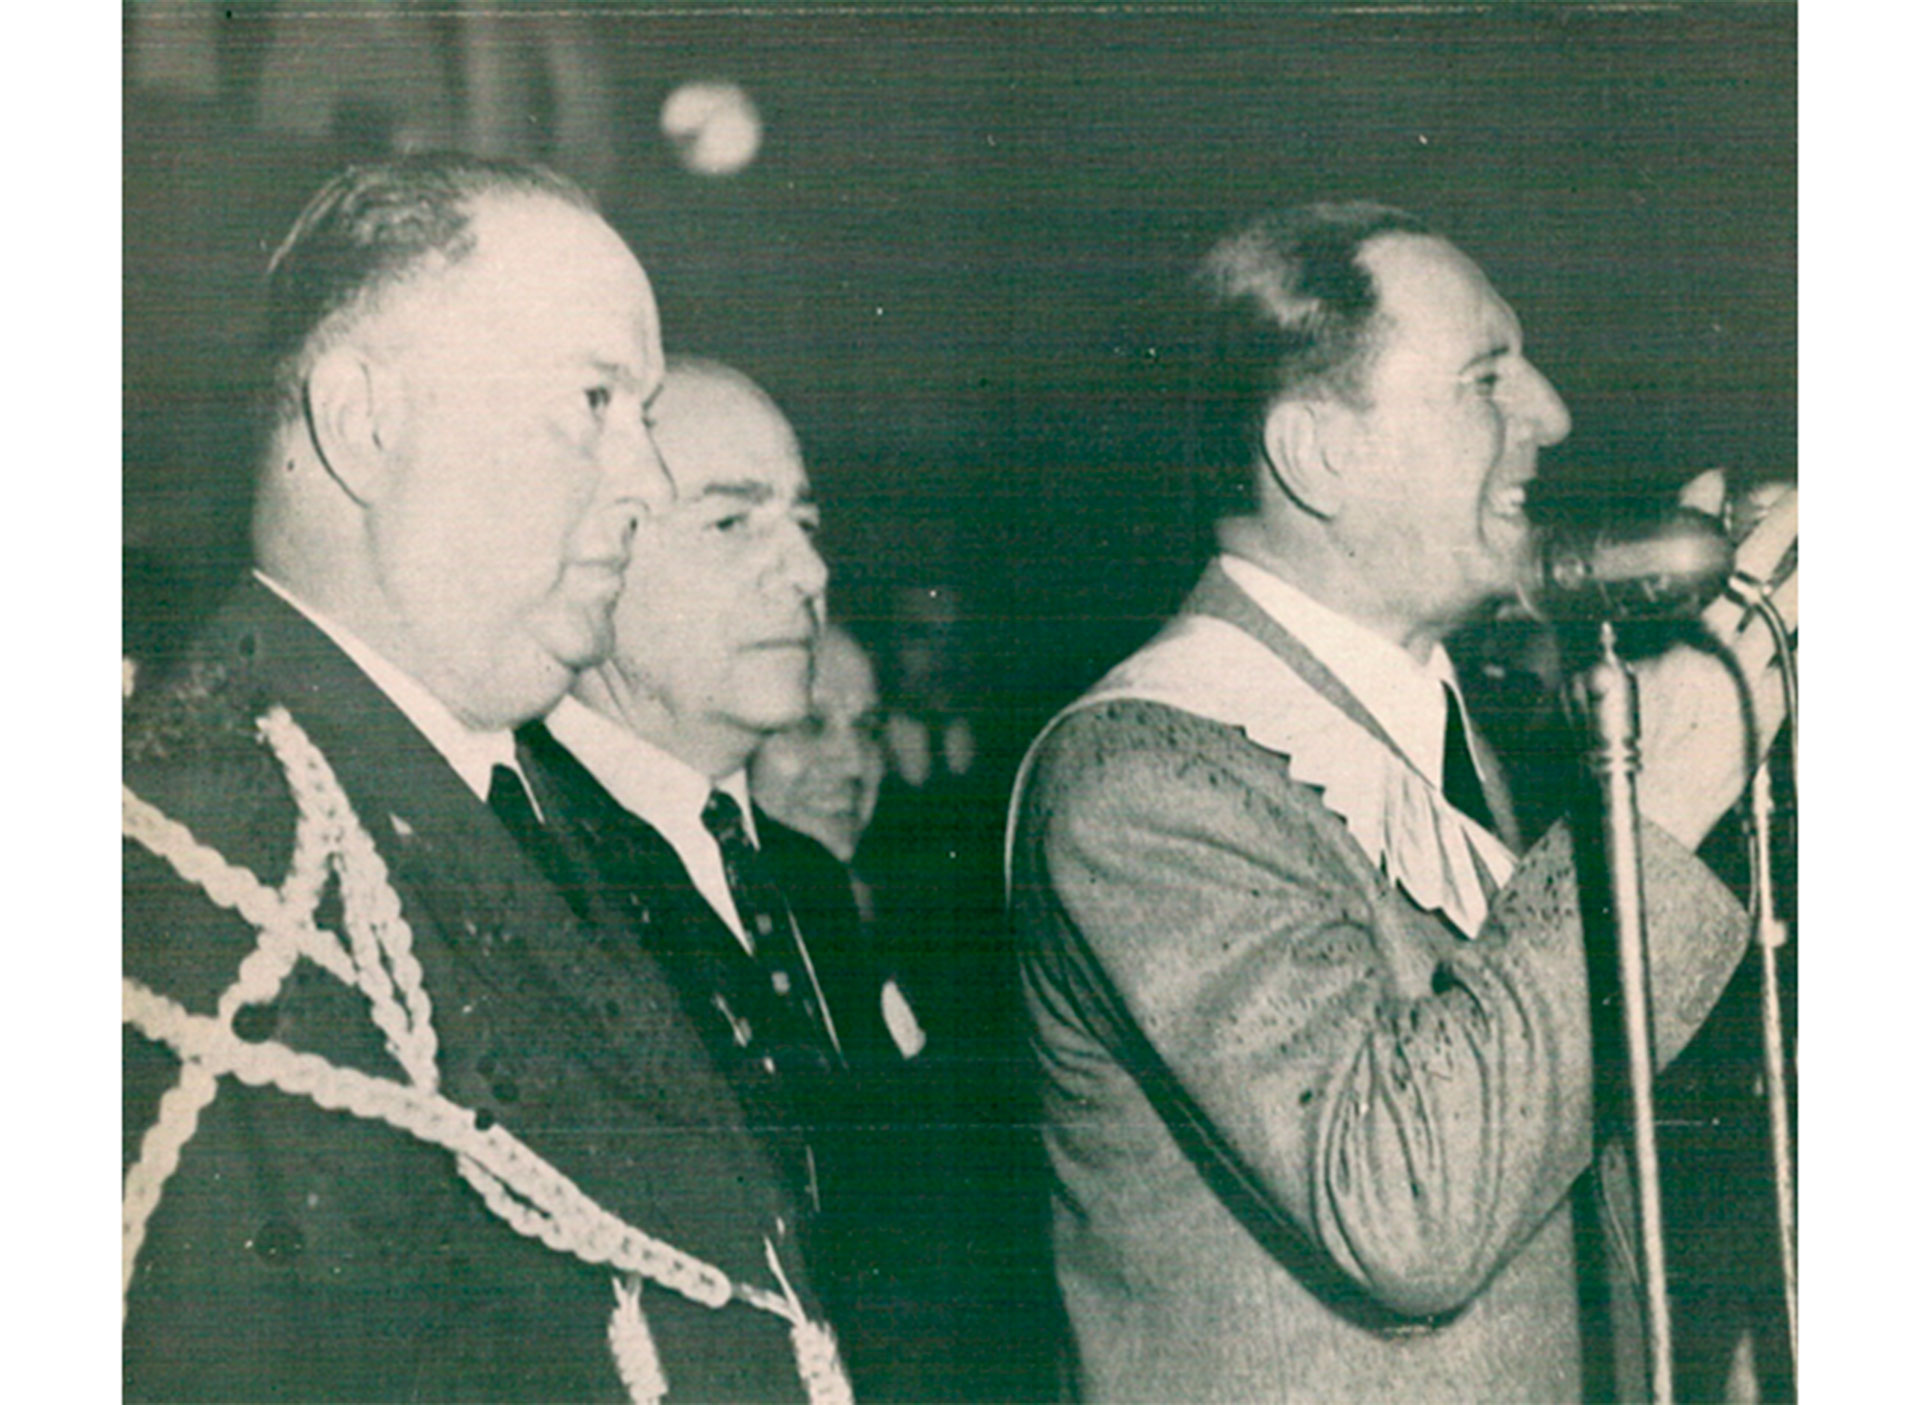 El 17 de Octubre de 1953 Perón habló a la multitud y homenajeó al dictador nicaragüense Anastasio Tacho Somoza García